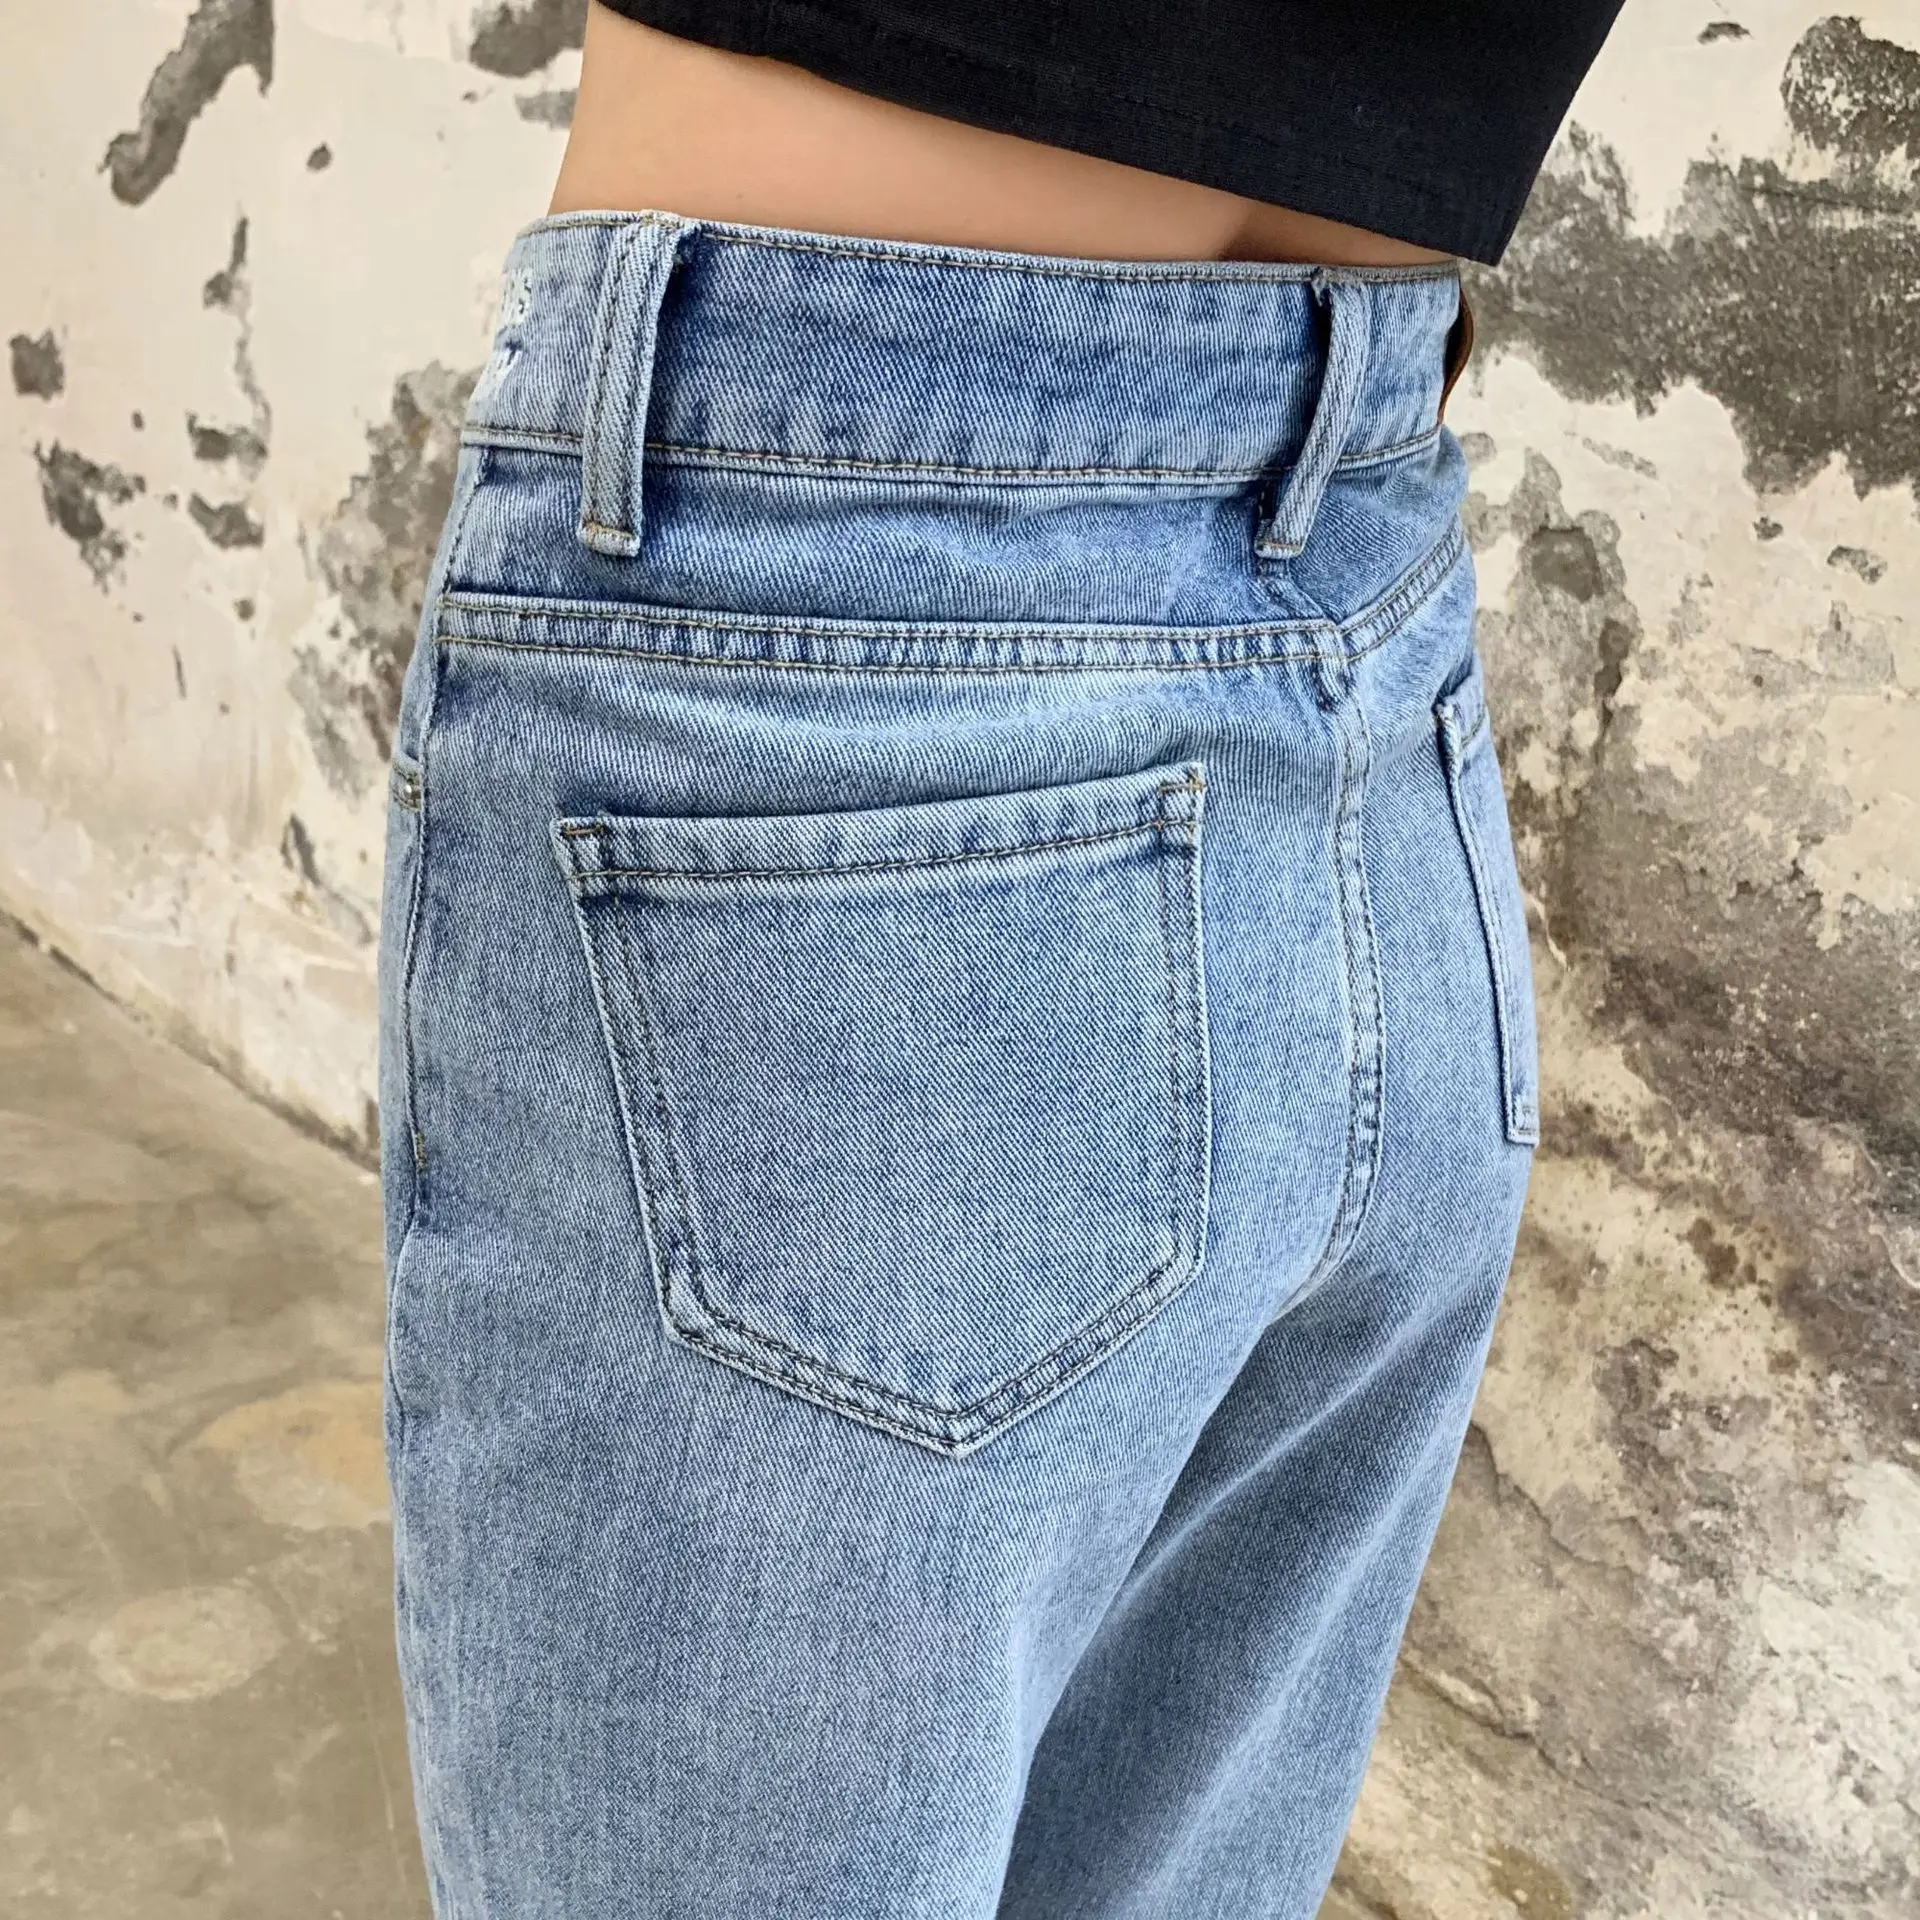 FX средняя талия вышитые алфавитные цветные джинсовые укороченные брюки женские были тонкие дикие зауженные брюки